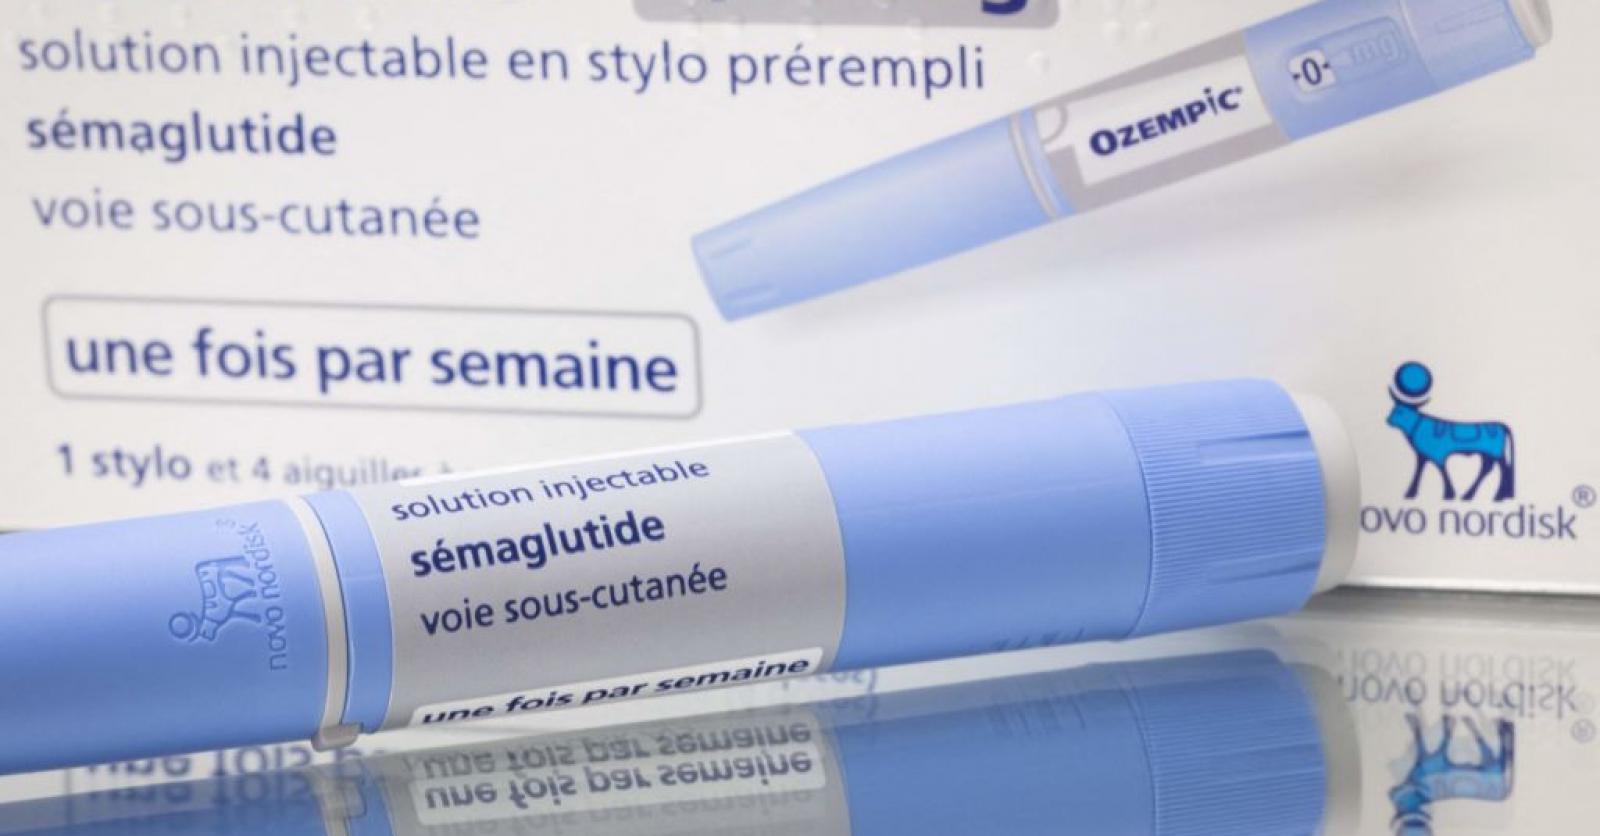 Le succès sur TikTok d'une pilule minceur inquiète les médecins en France